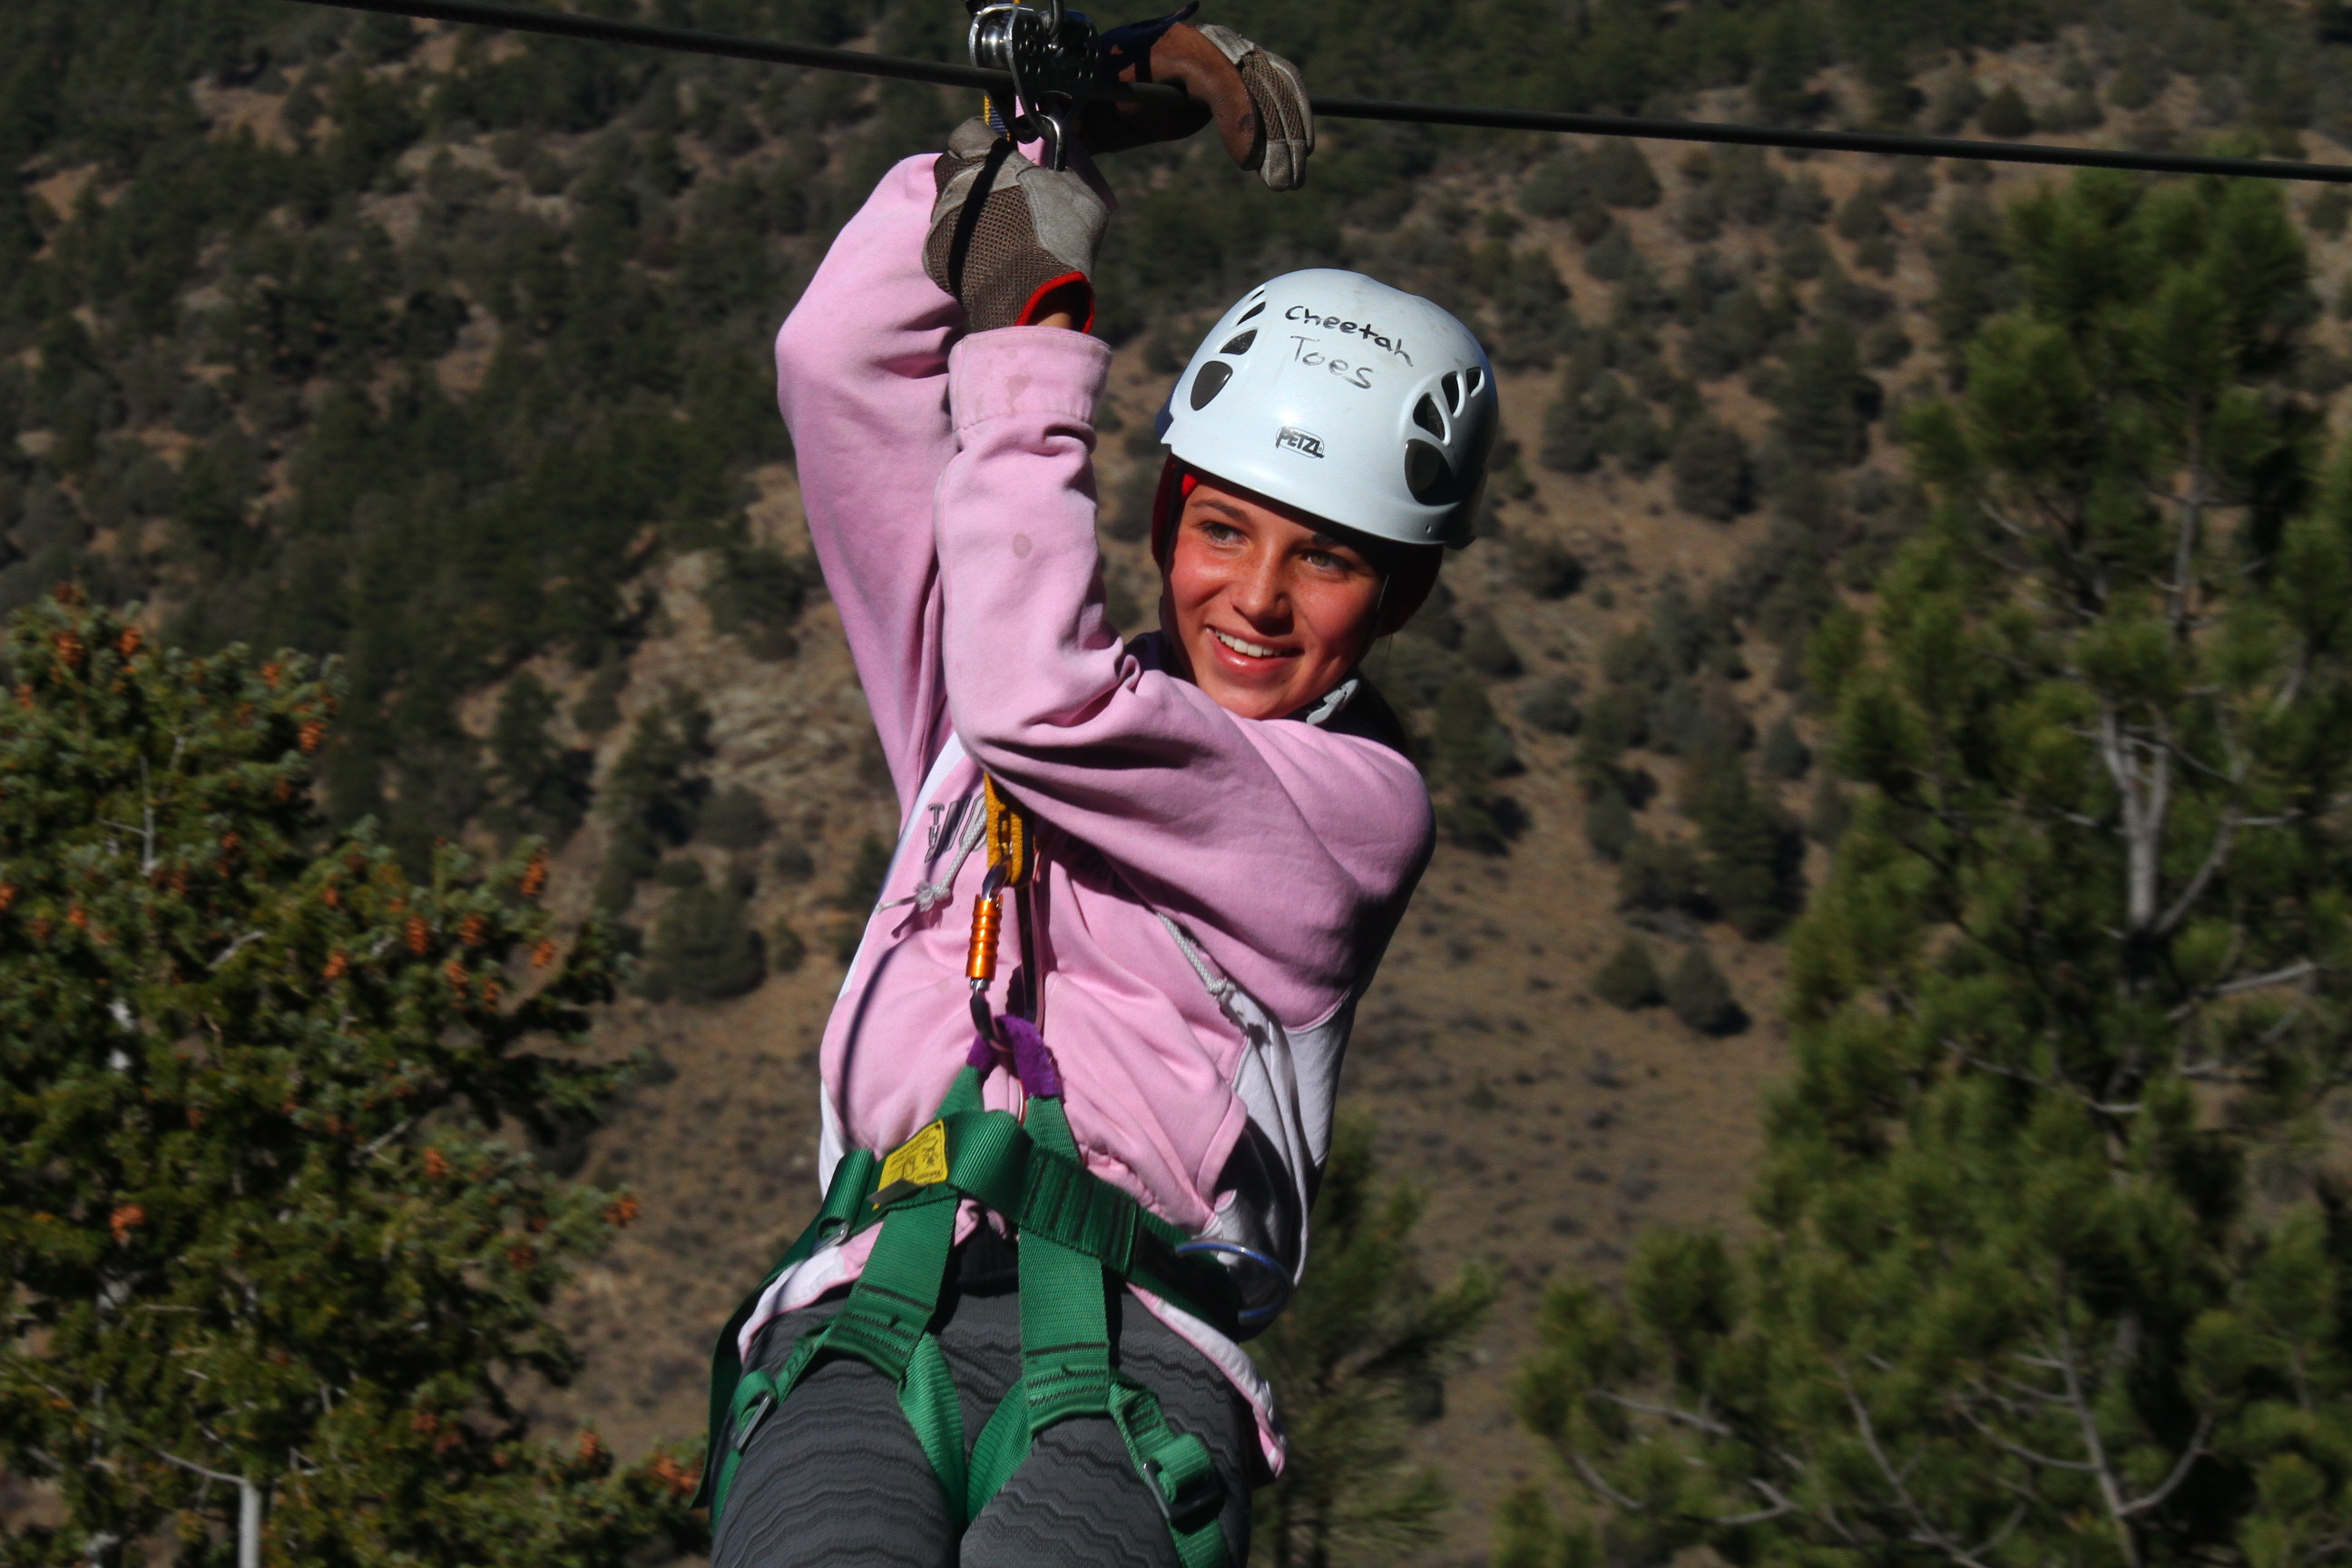 Ziplining Kids Colorado